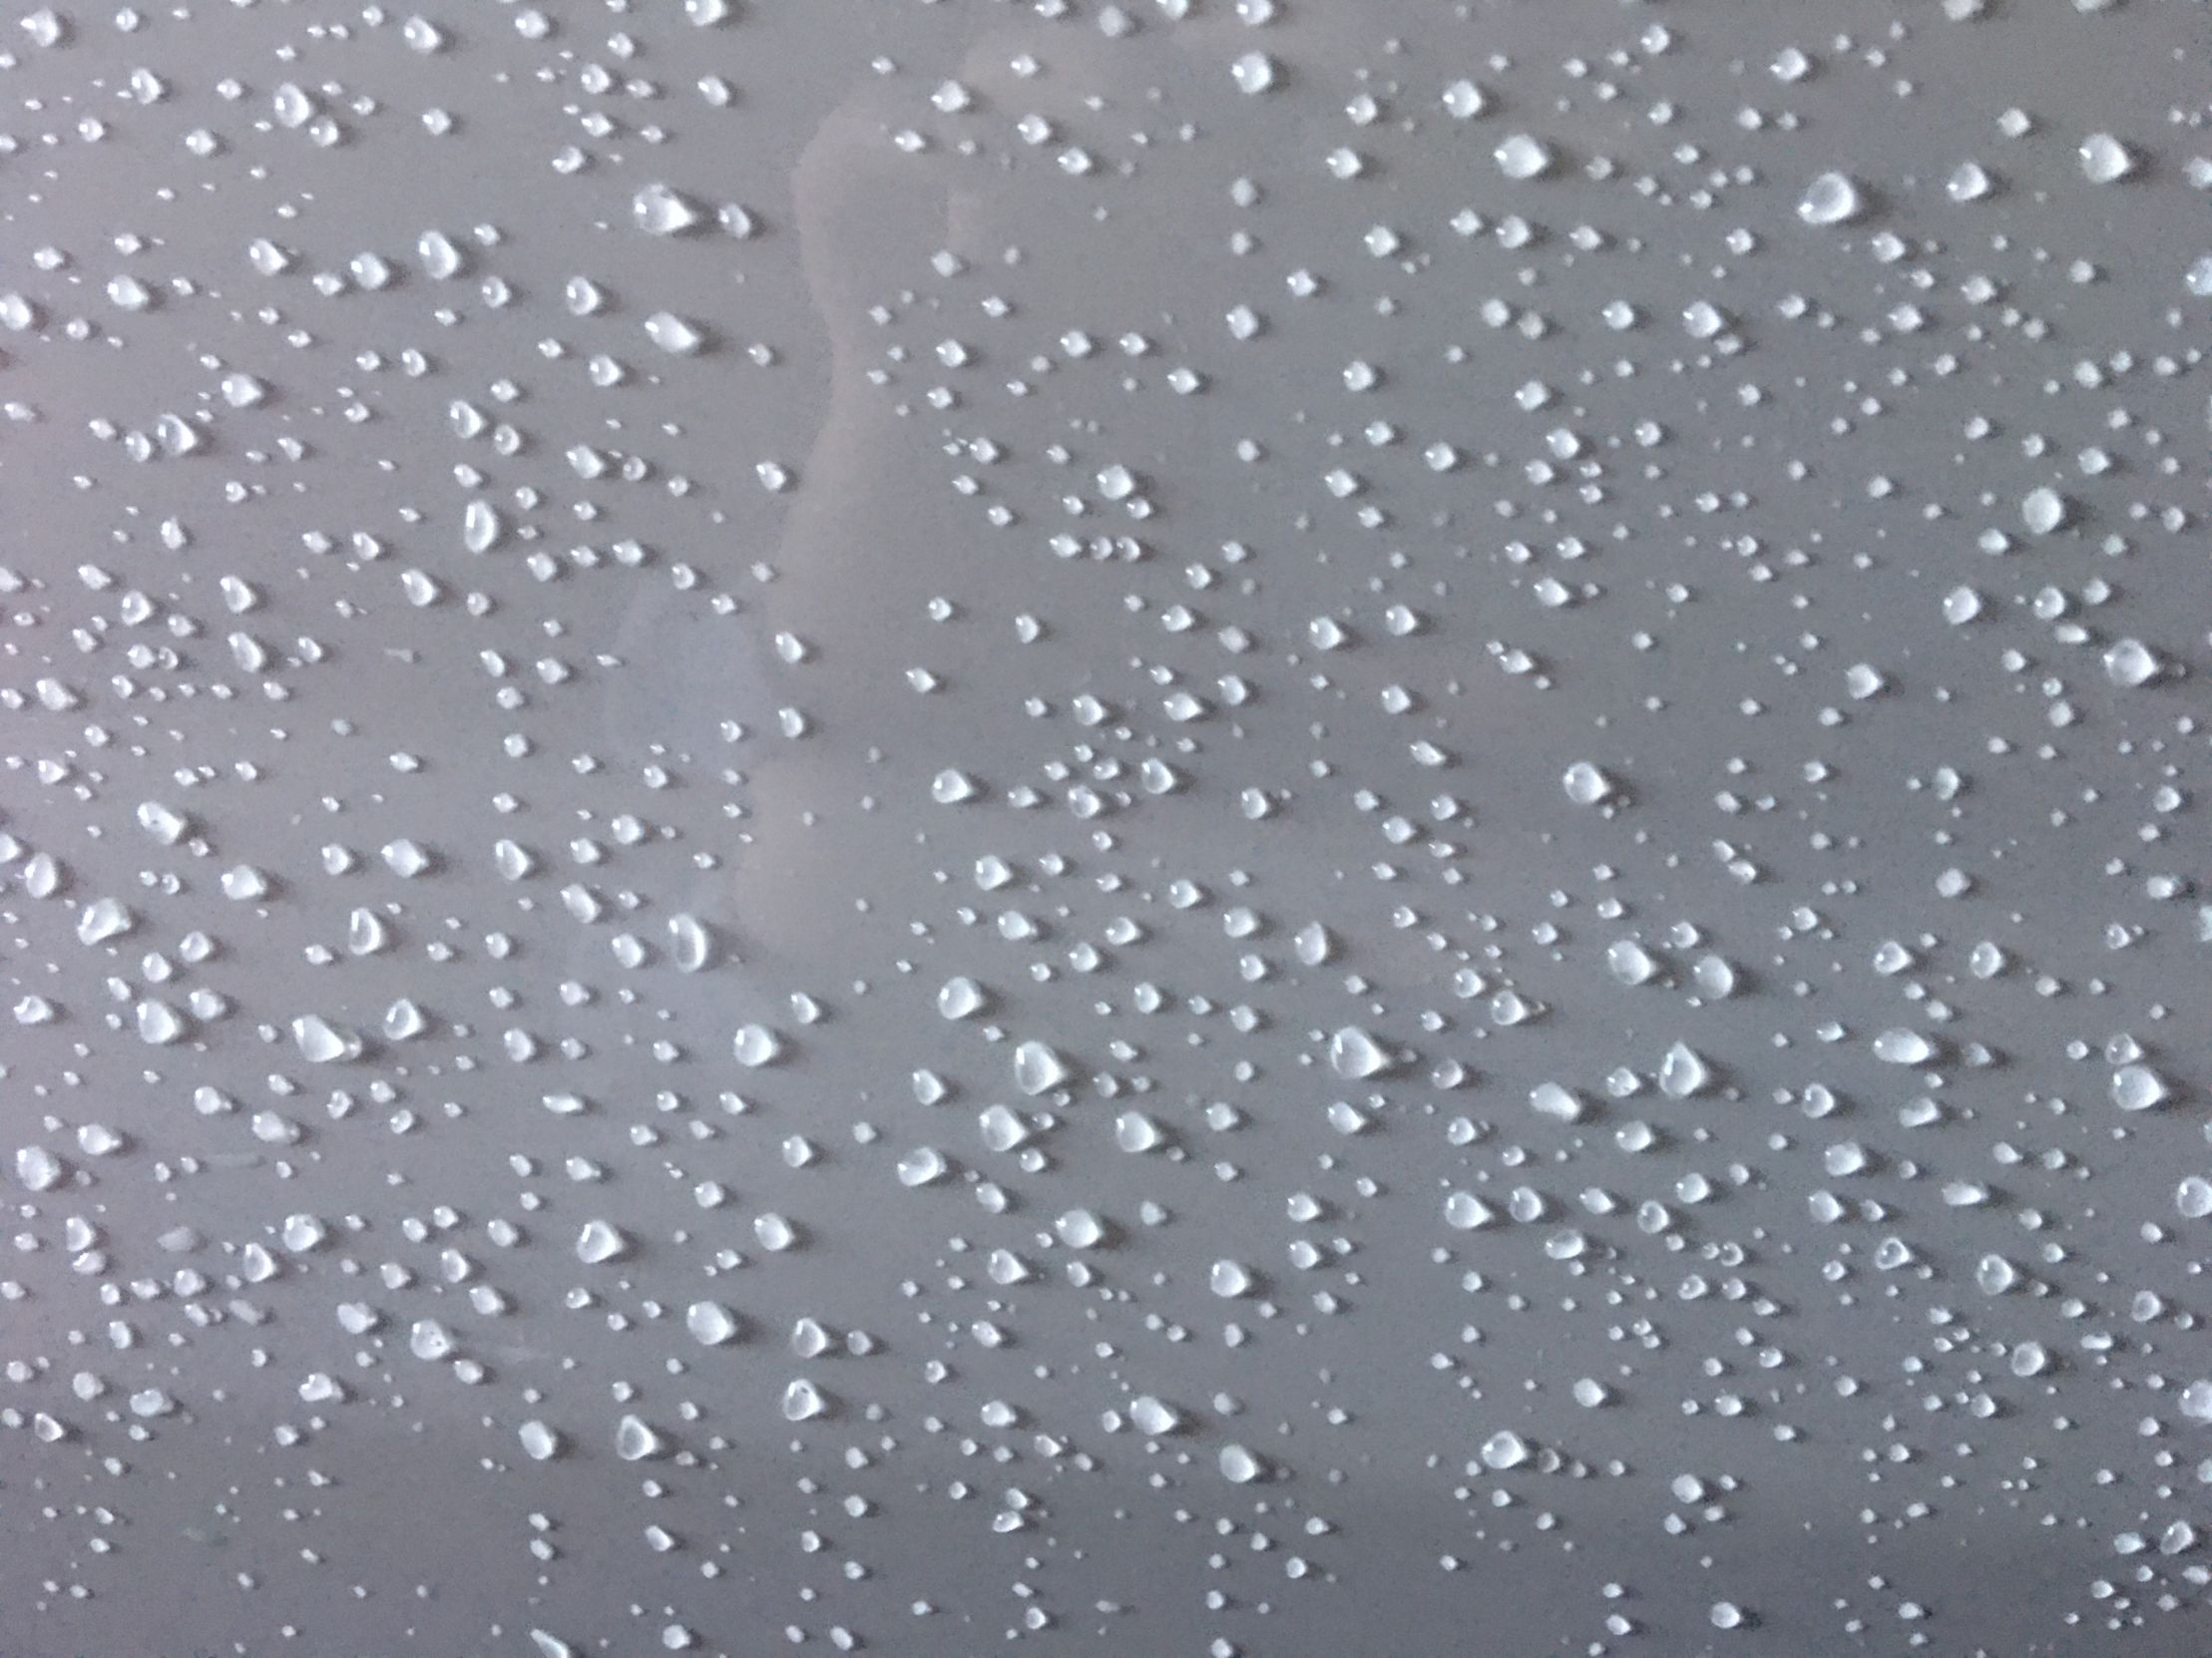 Raindrops on a Car Blank Meme Template